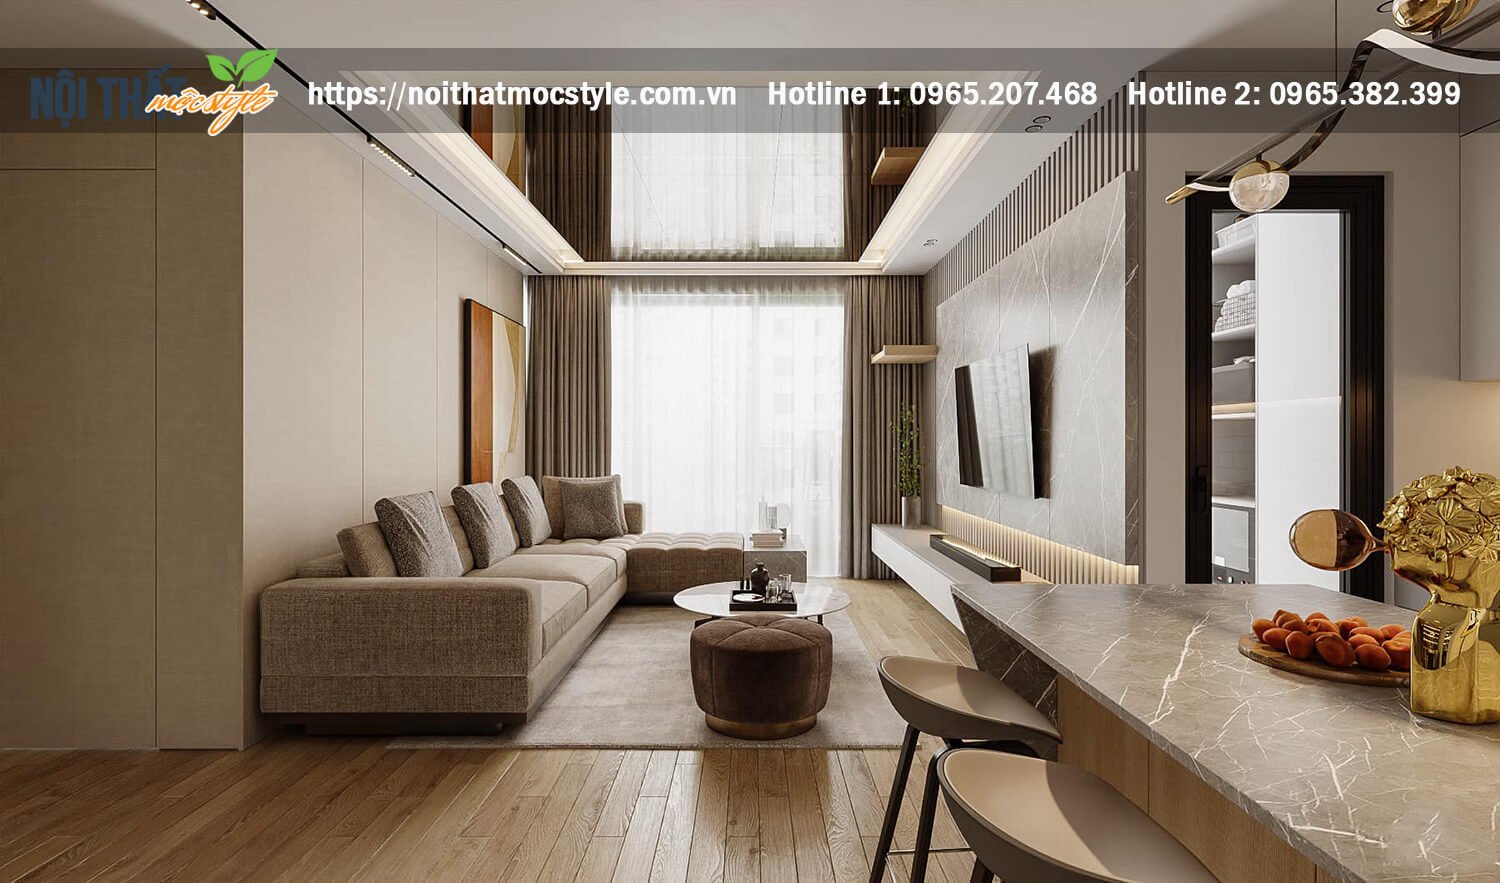 Thiết kế nội thất căn hộ chung cư The ZEI - Nội thất Mộc Style